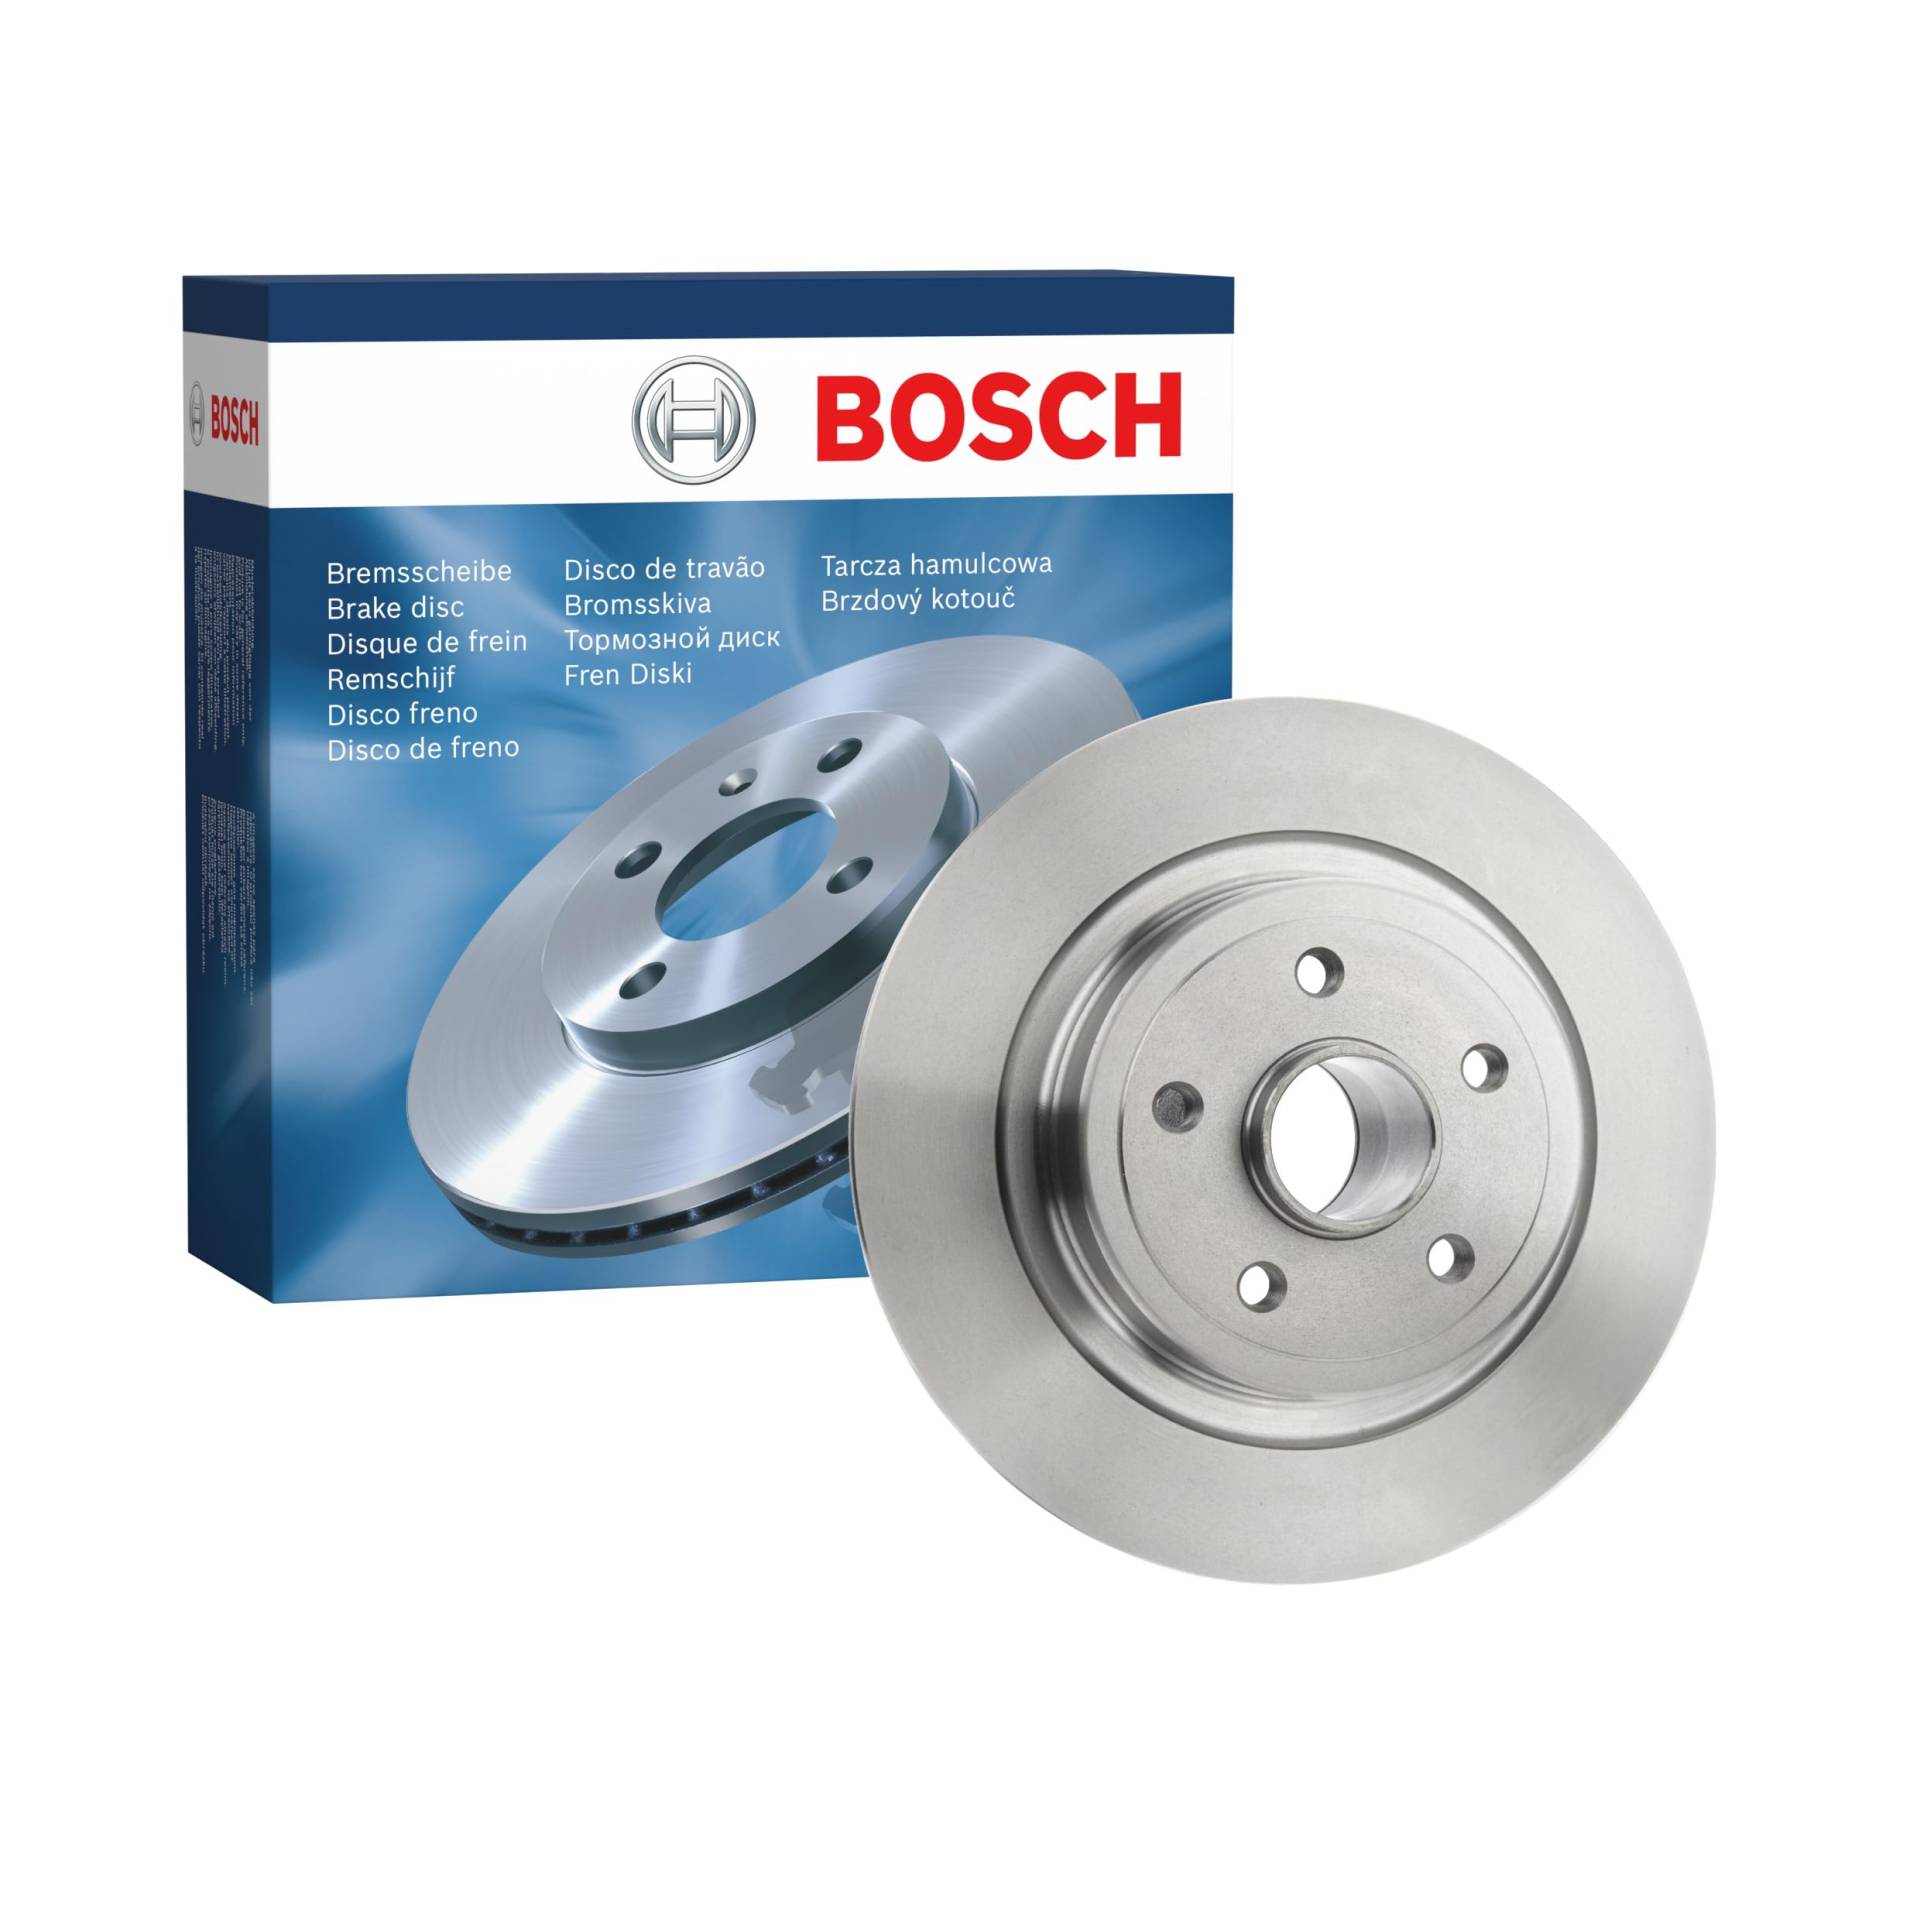 Bosch BD1556 Bremsscheiben - Hinterachse - ECE-R90 Zertifizierung - eine Bremsscheibe von Bosch Automotive